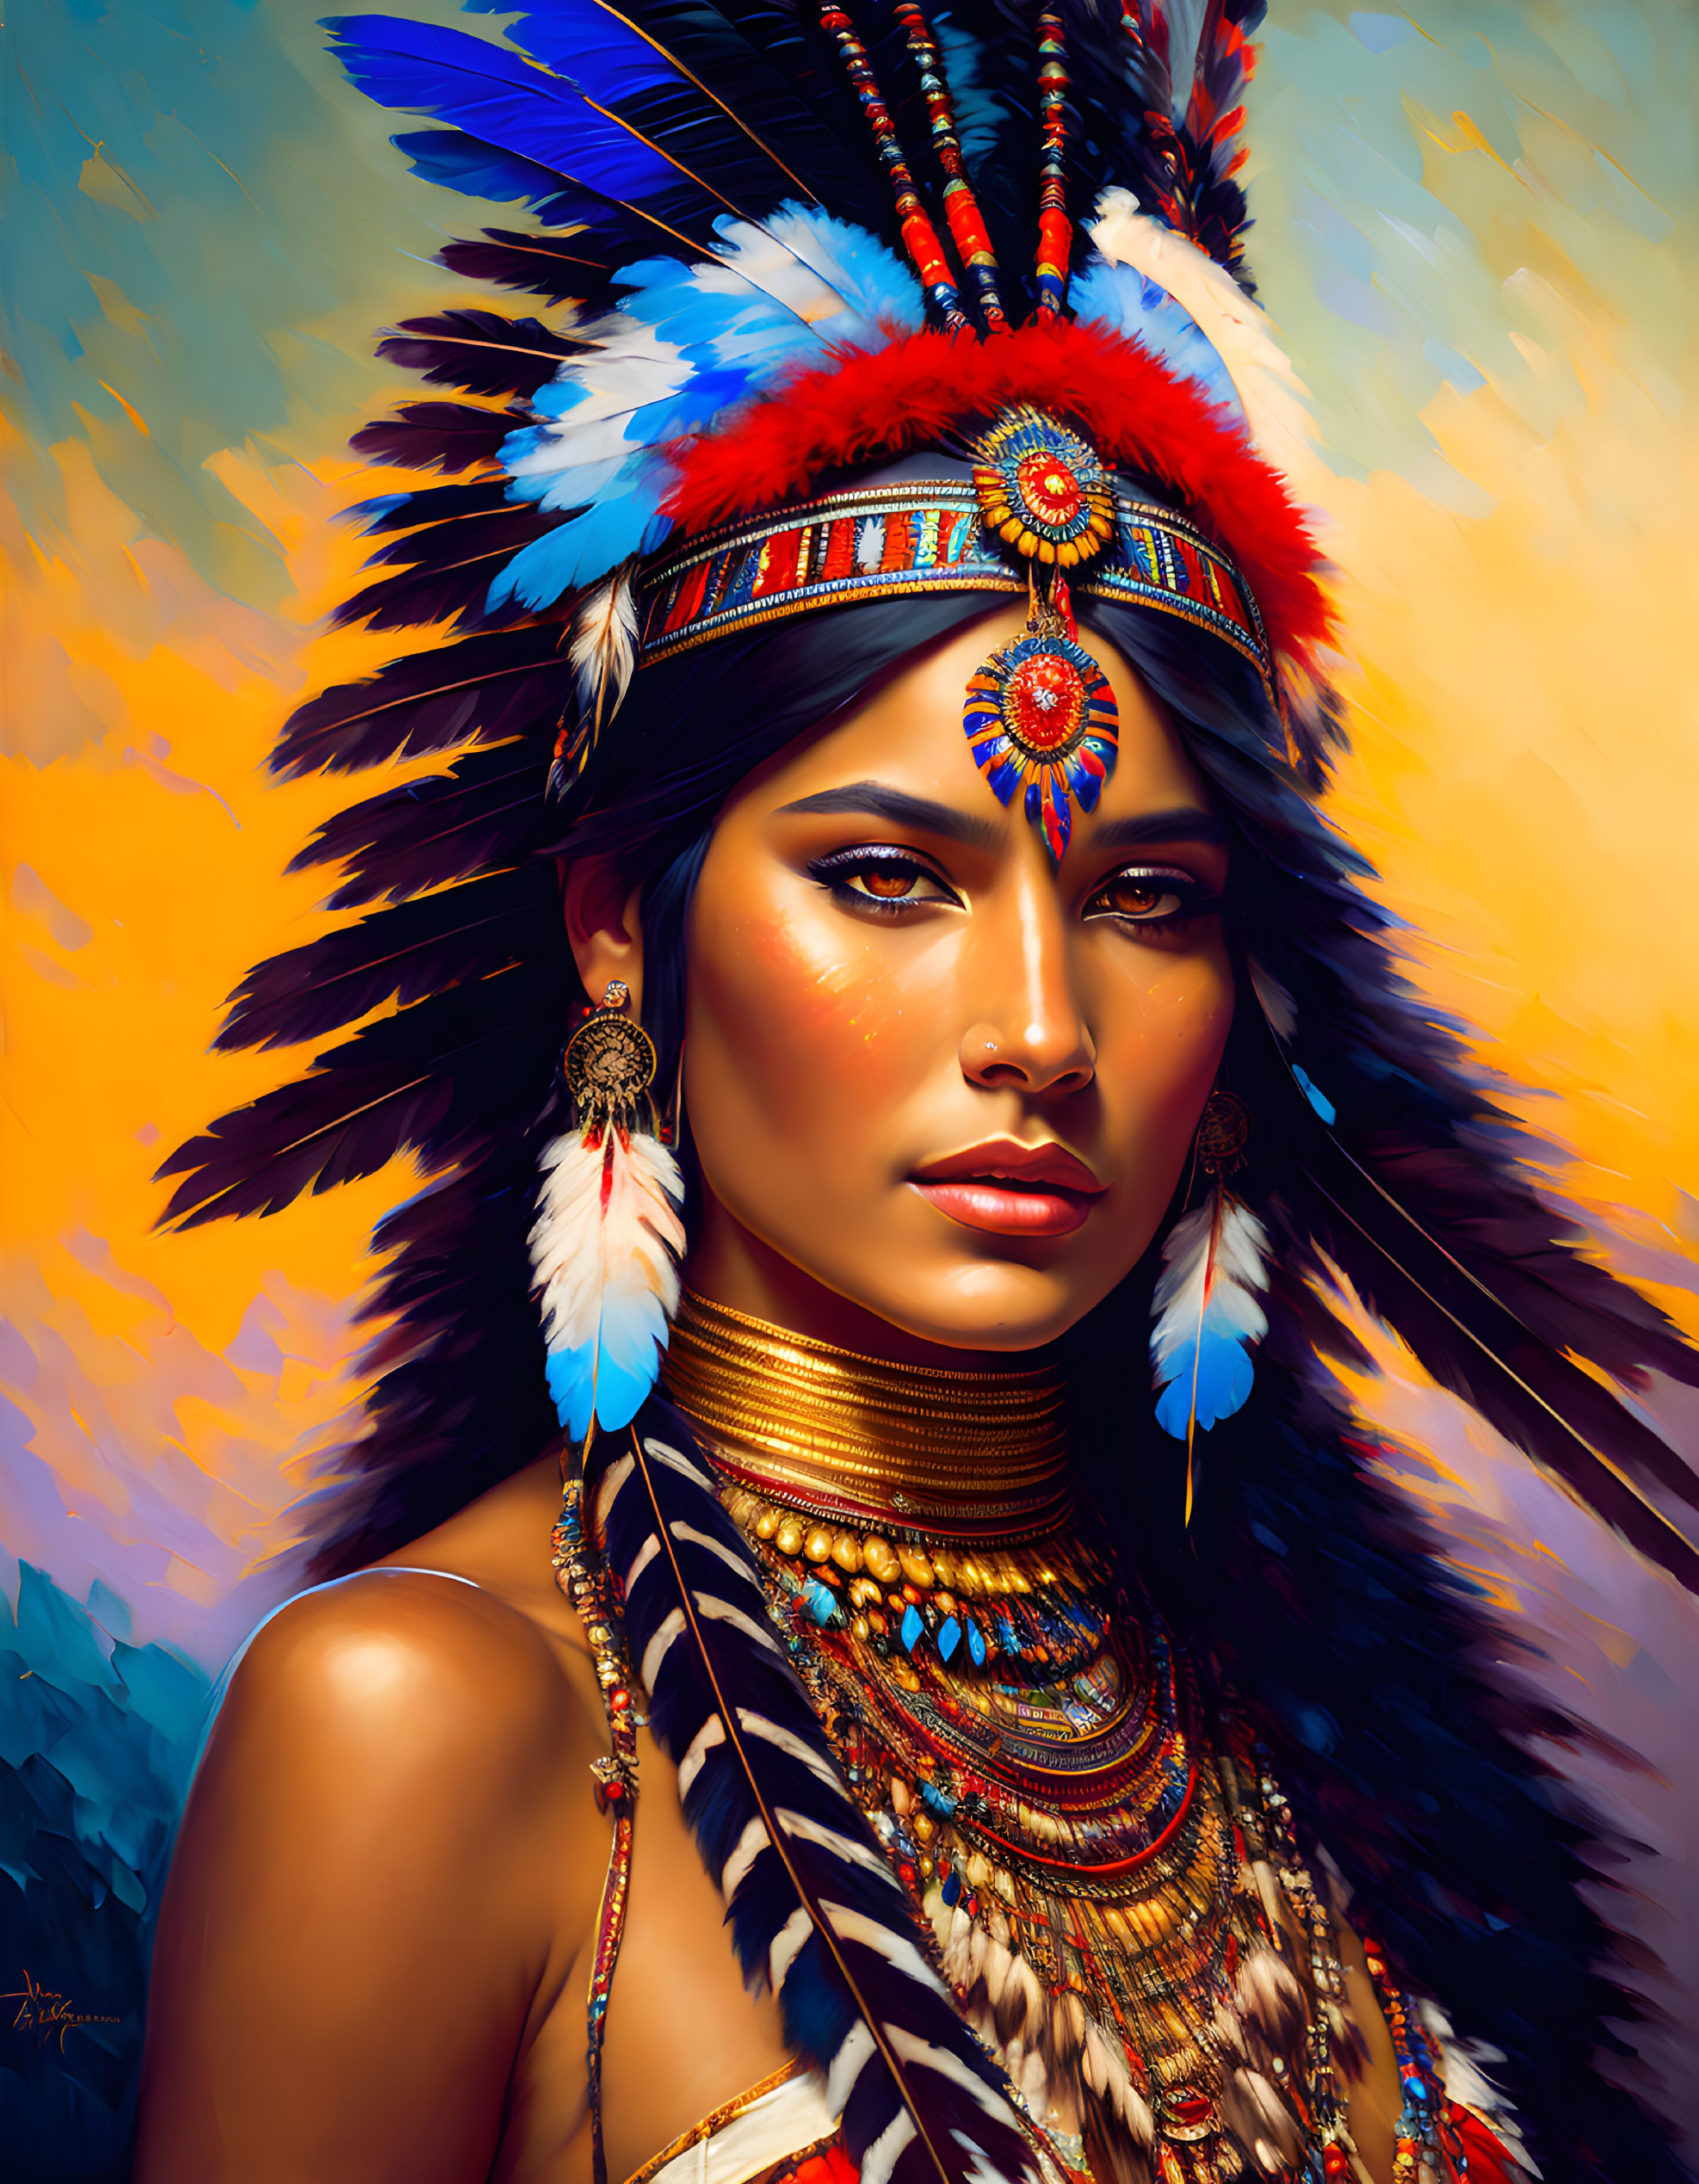 Beautiful native American girl